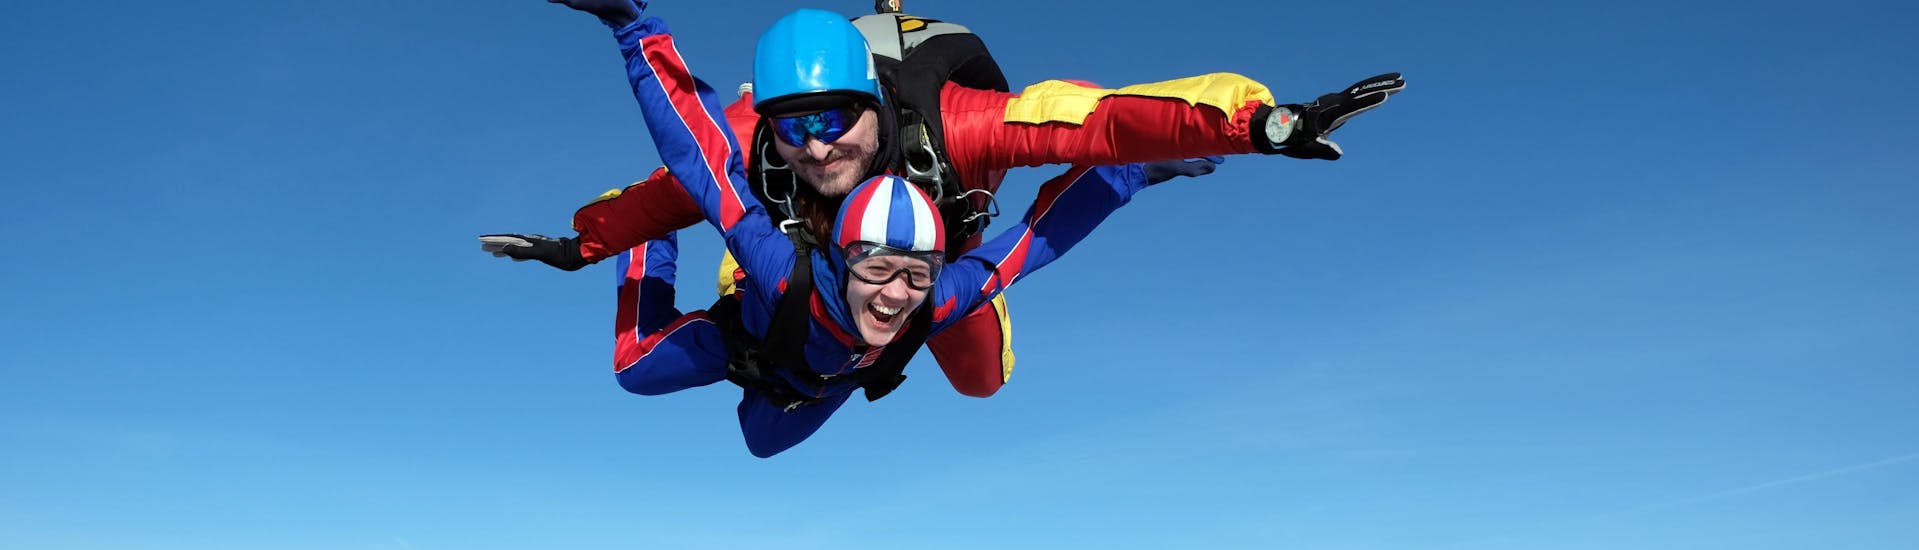 Tandem skydive met Black Forest Skydive - Hero image